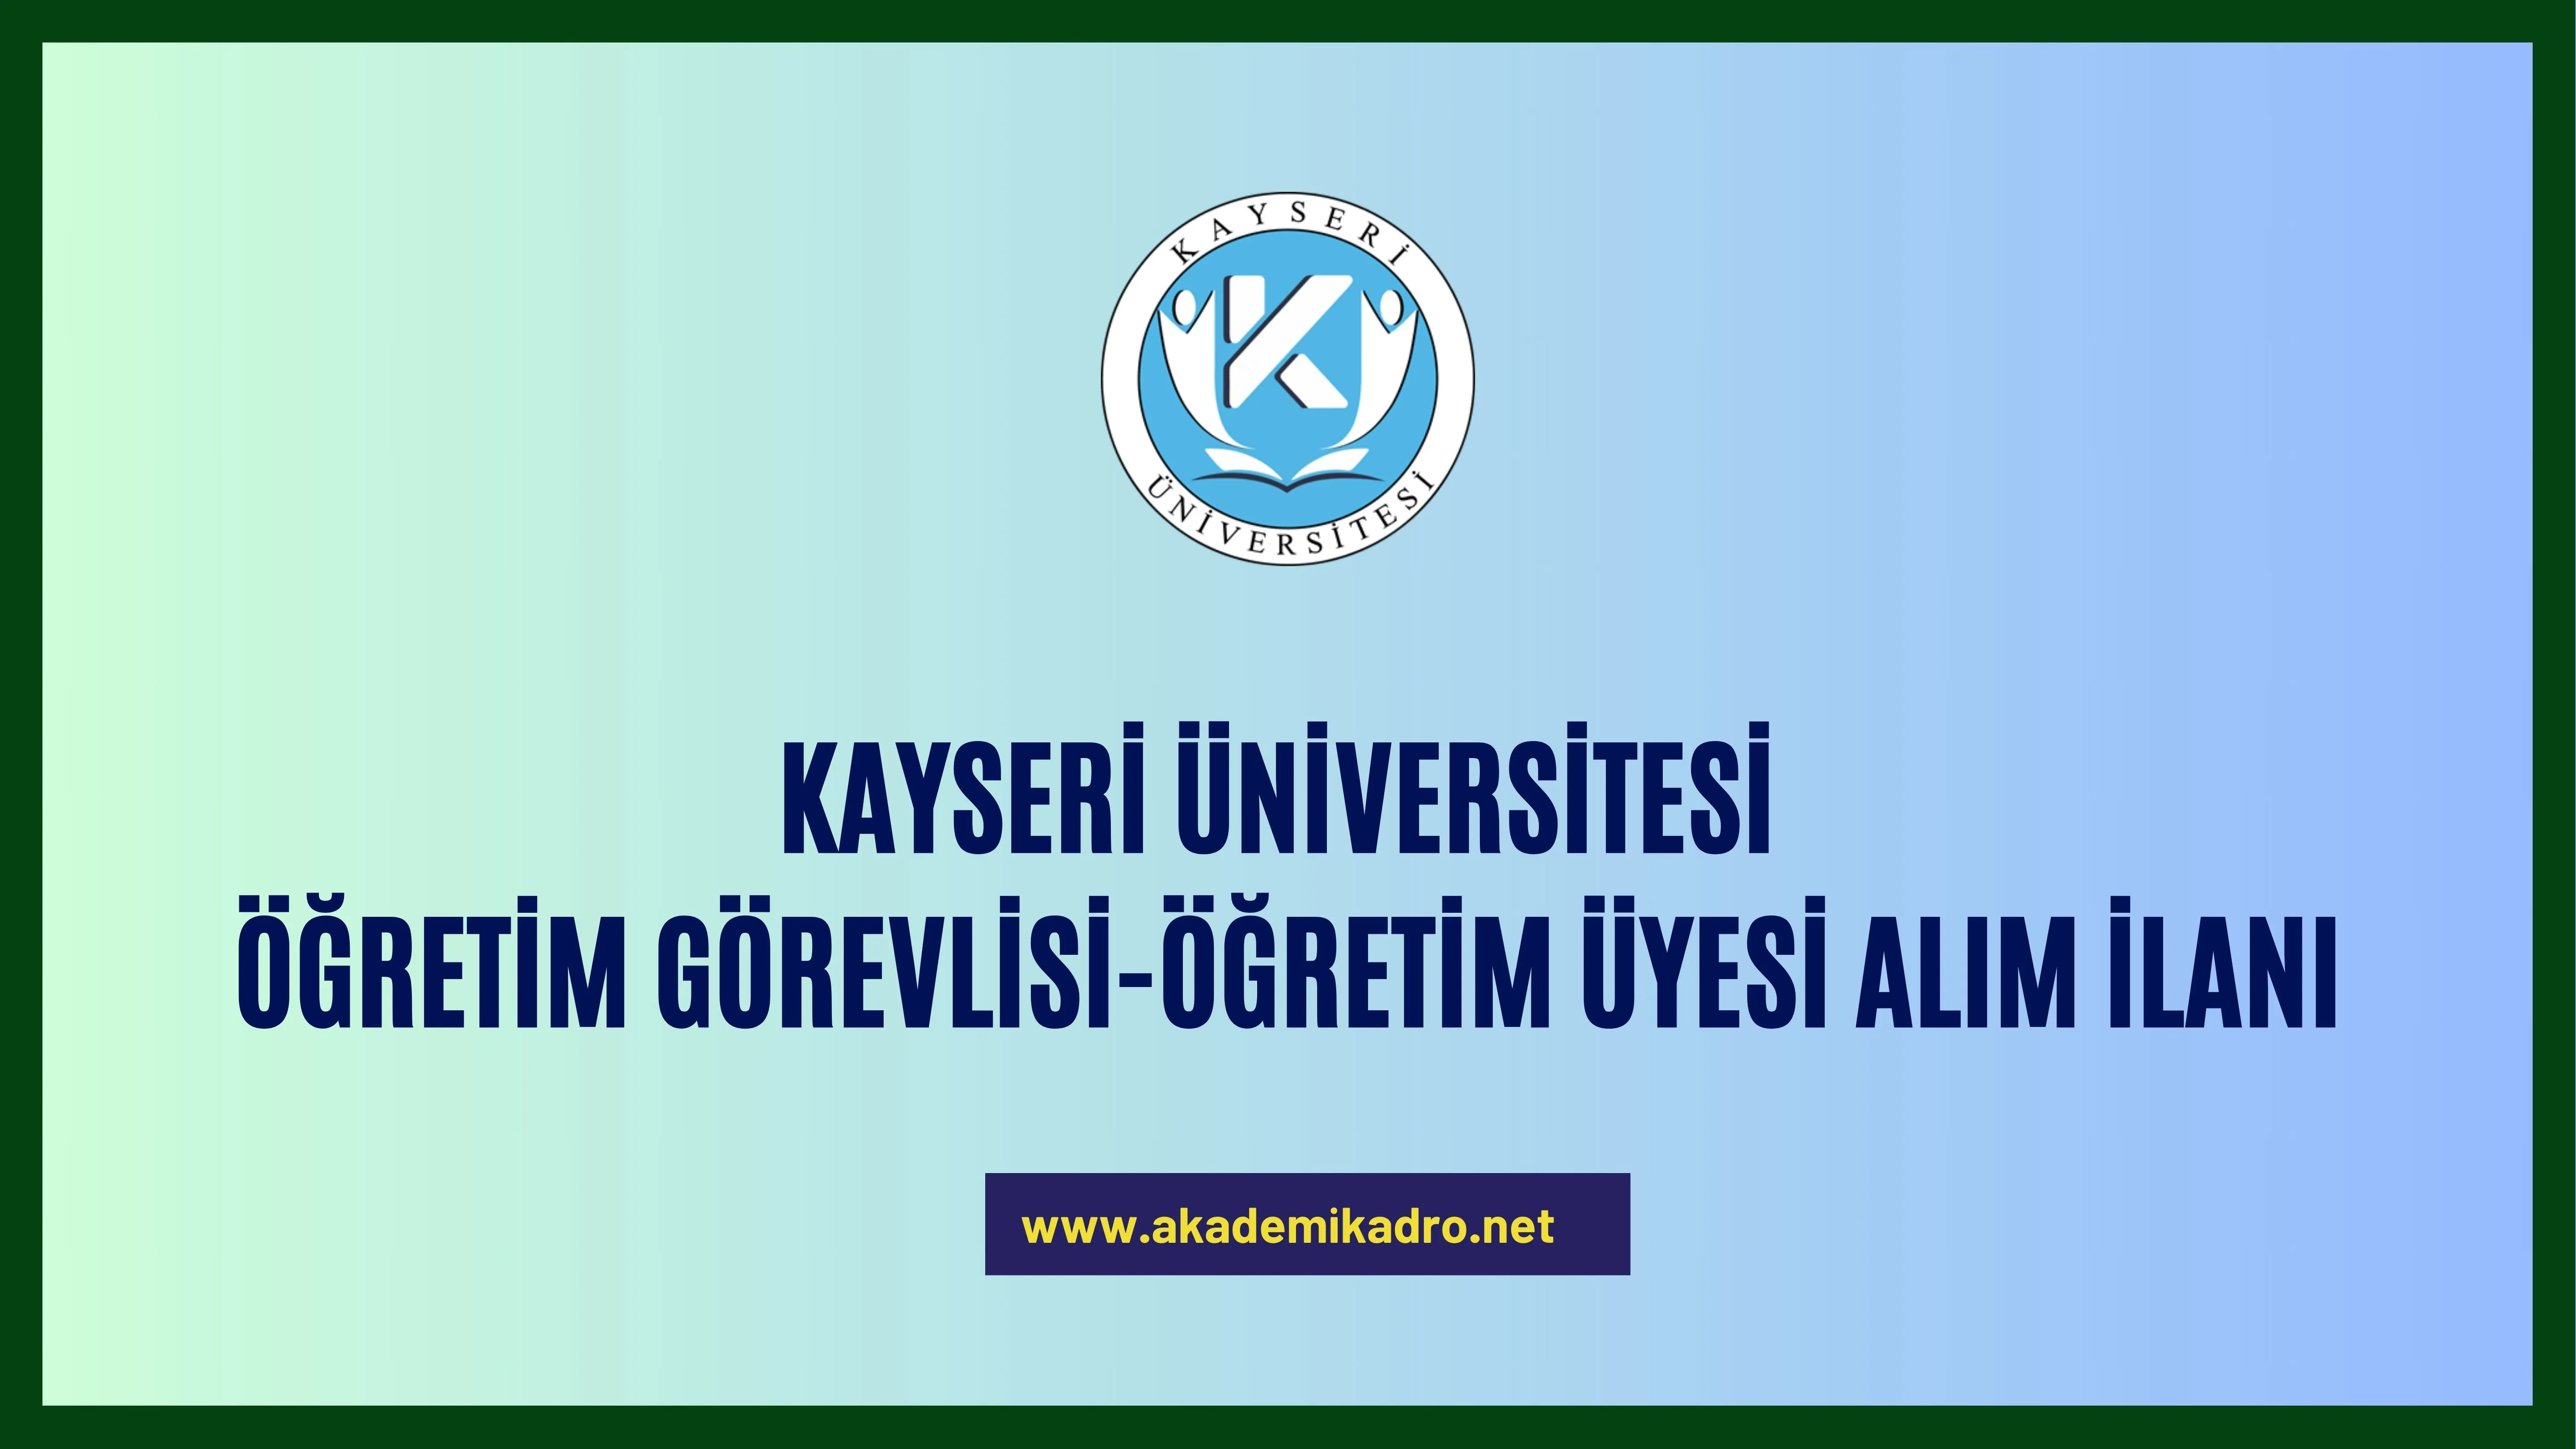 Kayseri Üniversitesi 4 Öğretim görevlisi ve 3 Öğretim üyesi alacak.